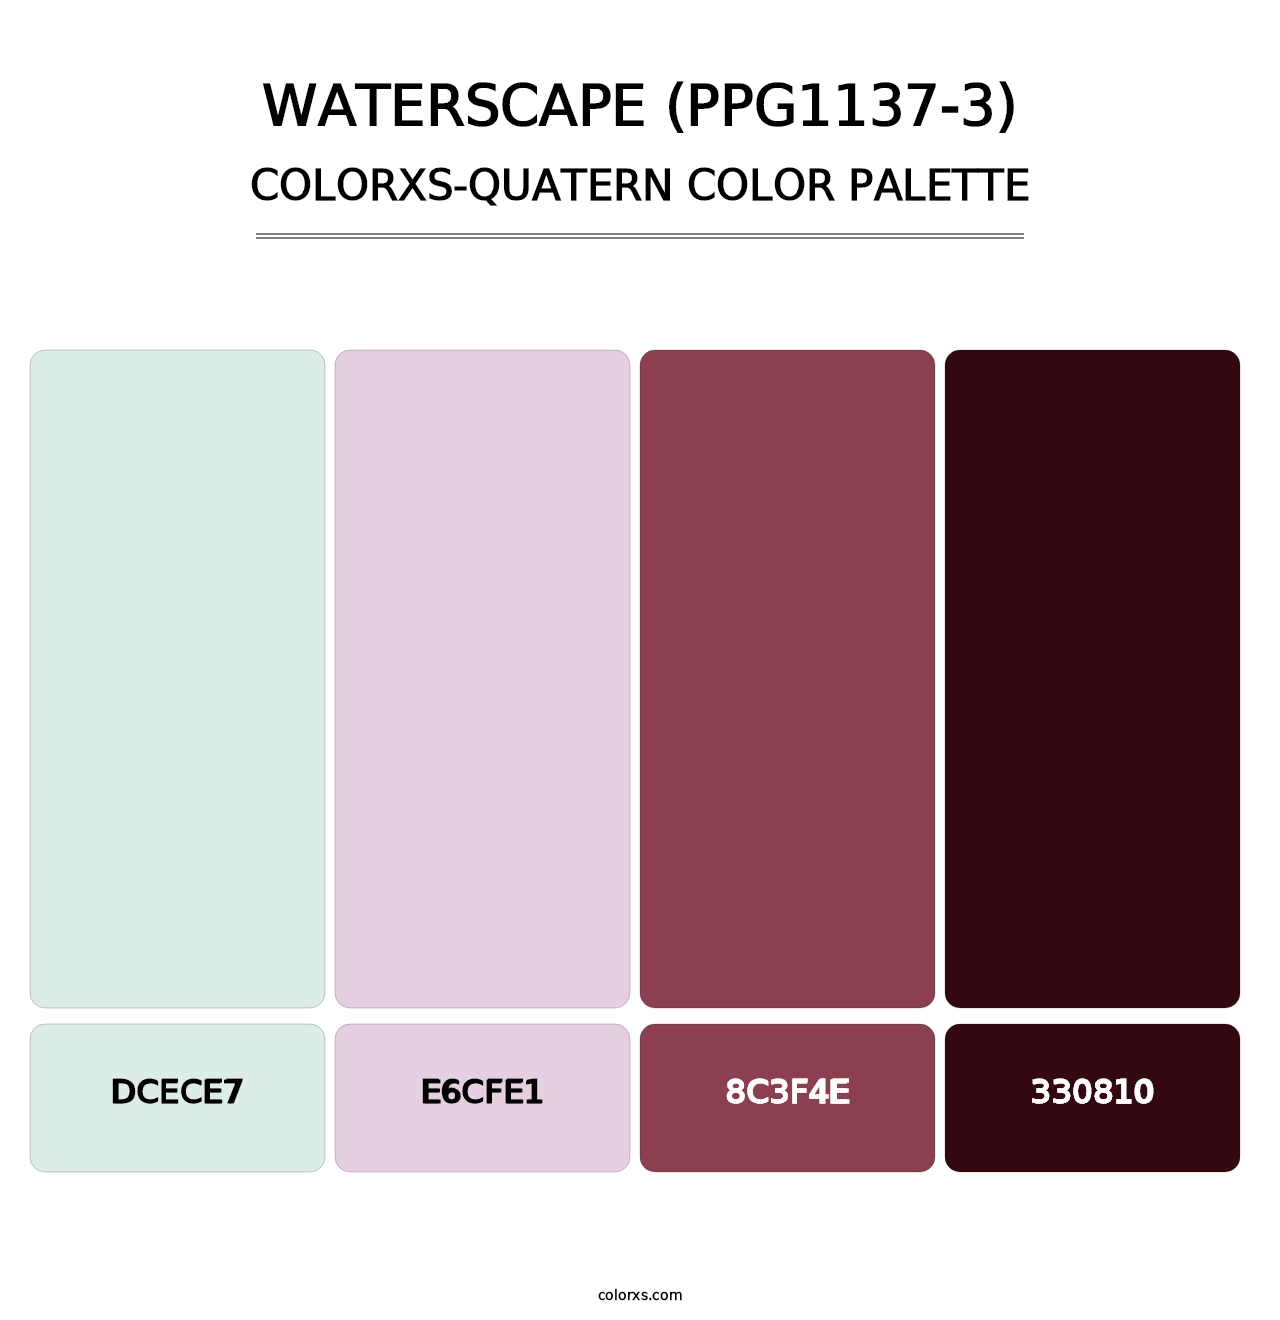 Waterscape (PPG1137-3) - Colorxs Quatern Palette